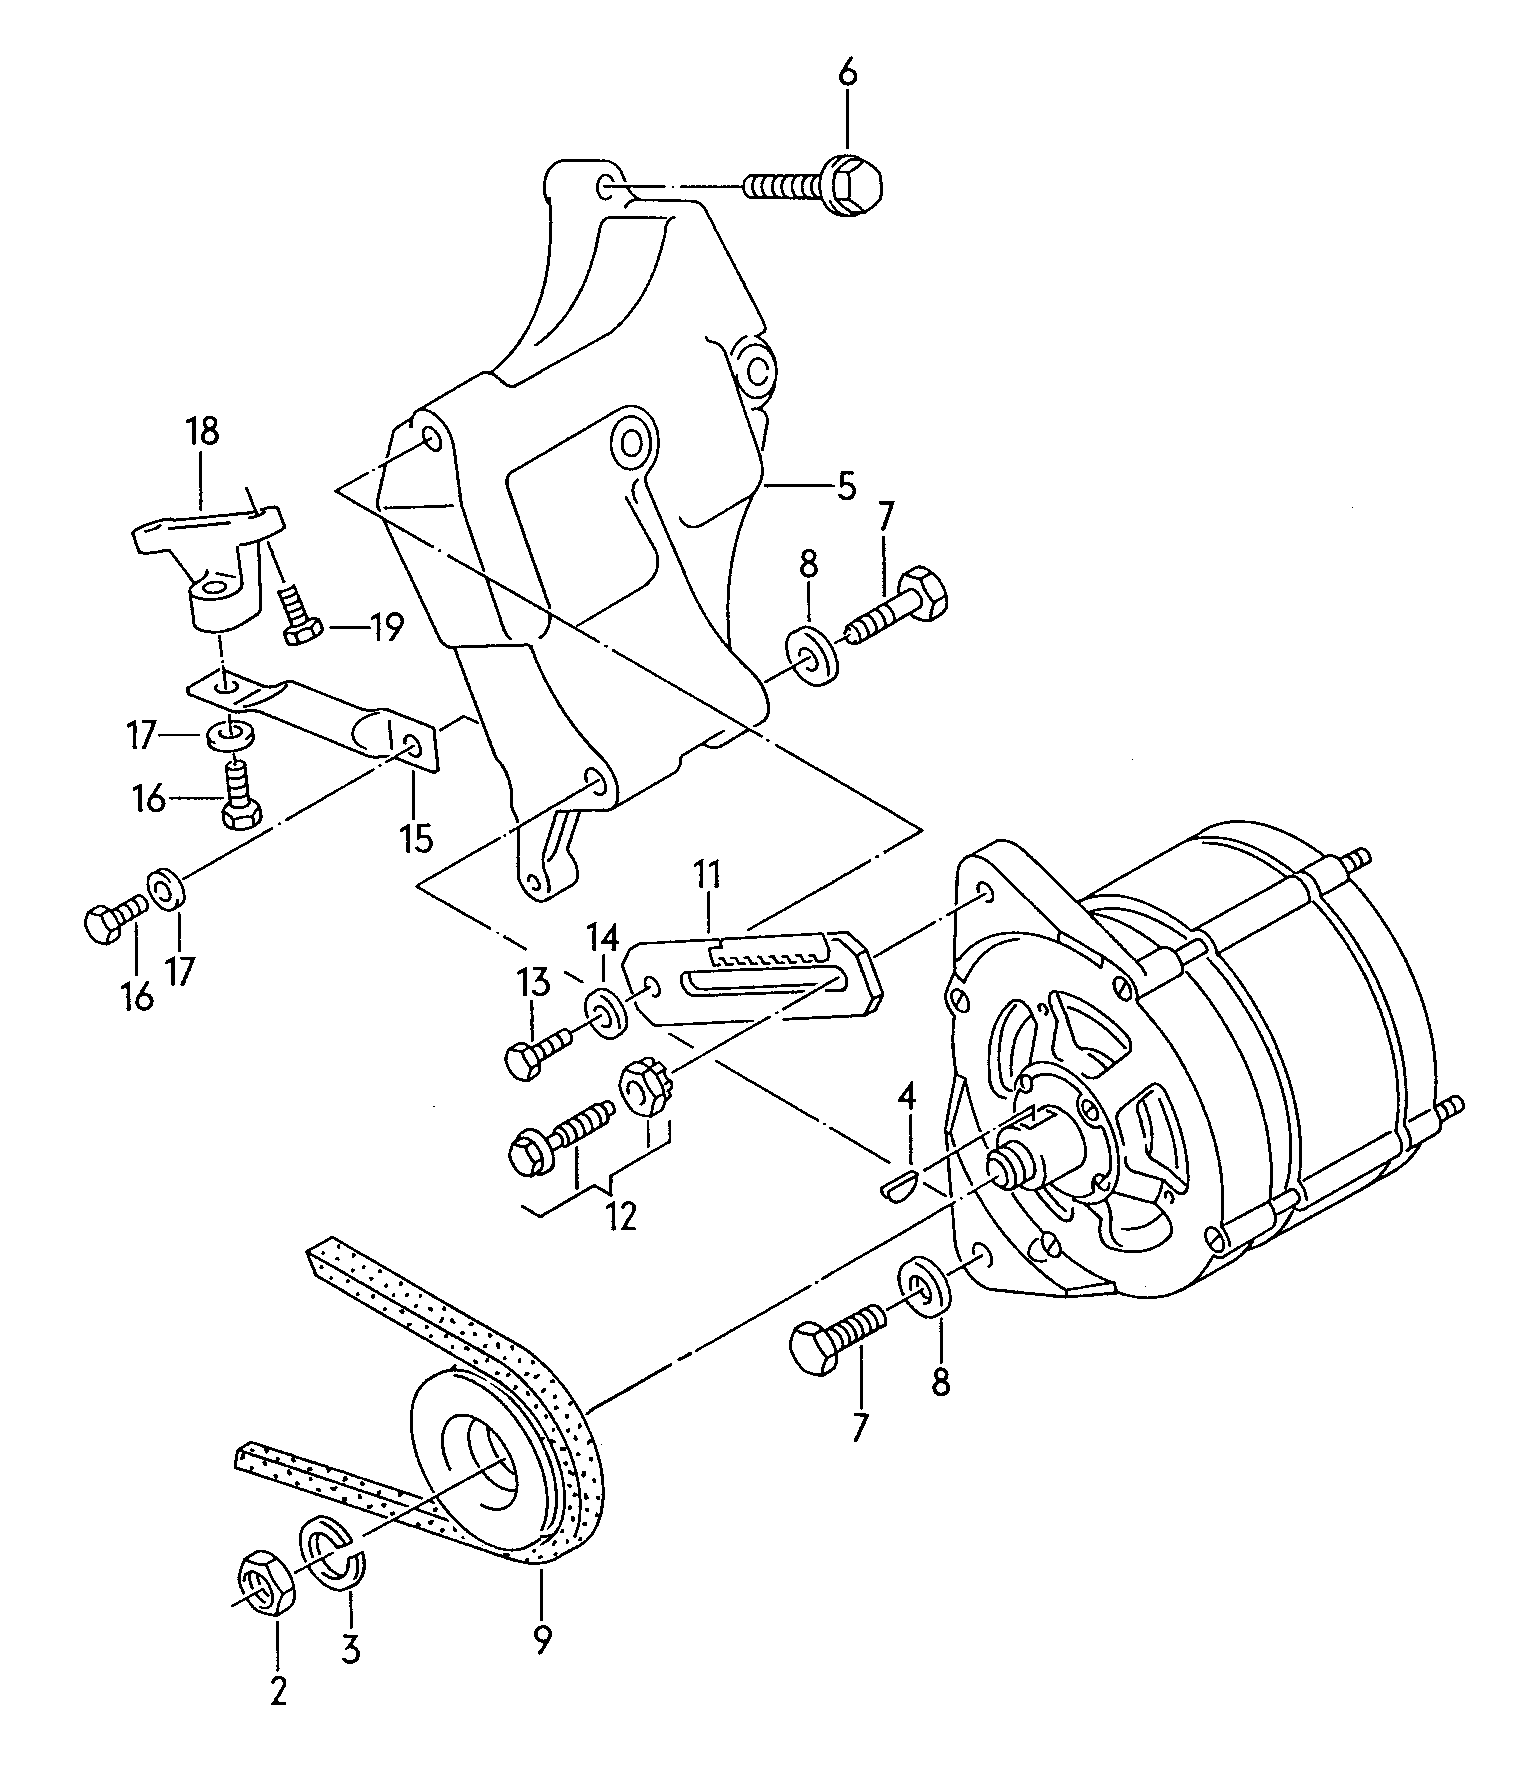 parti collegamento e
fissaggio per alternatore - Audi Coupe quattro(ACOQ)  